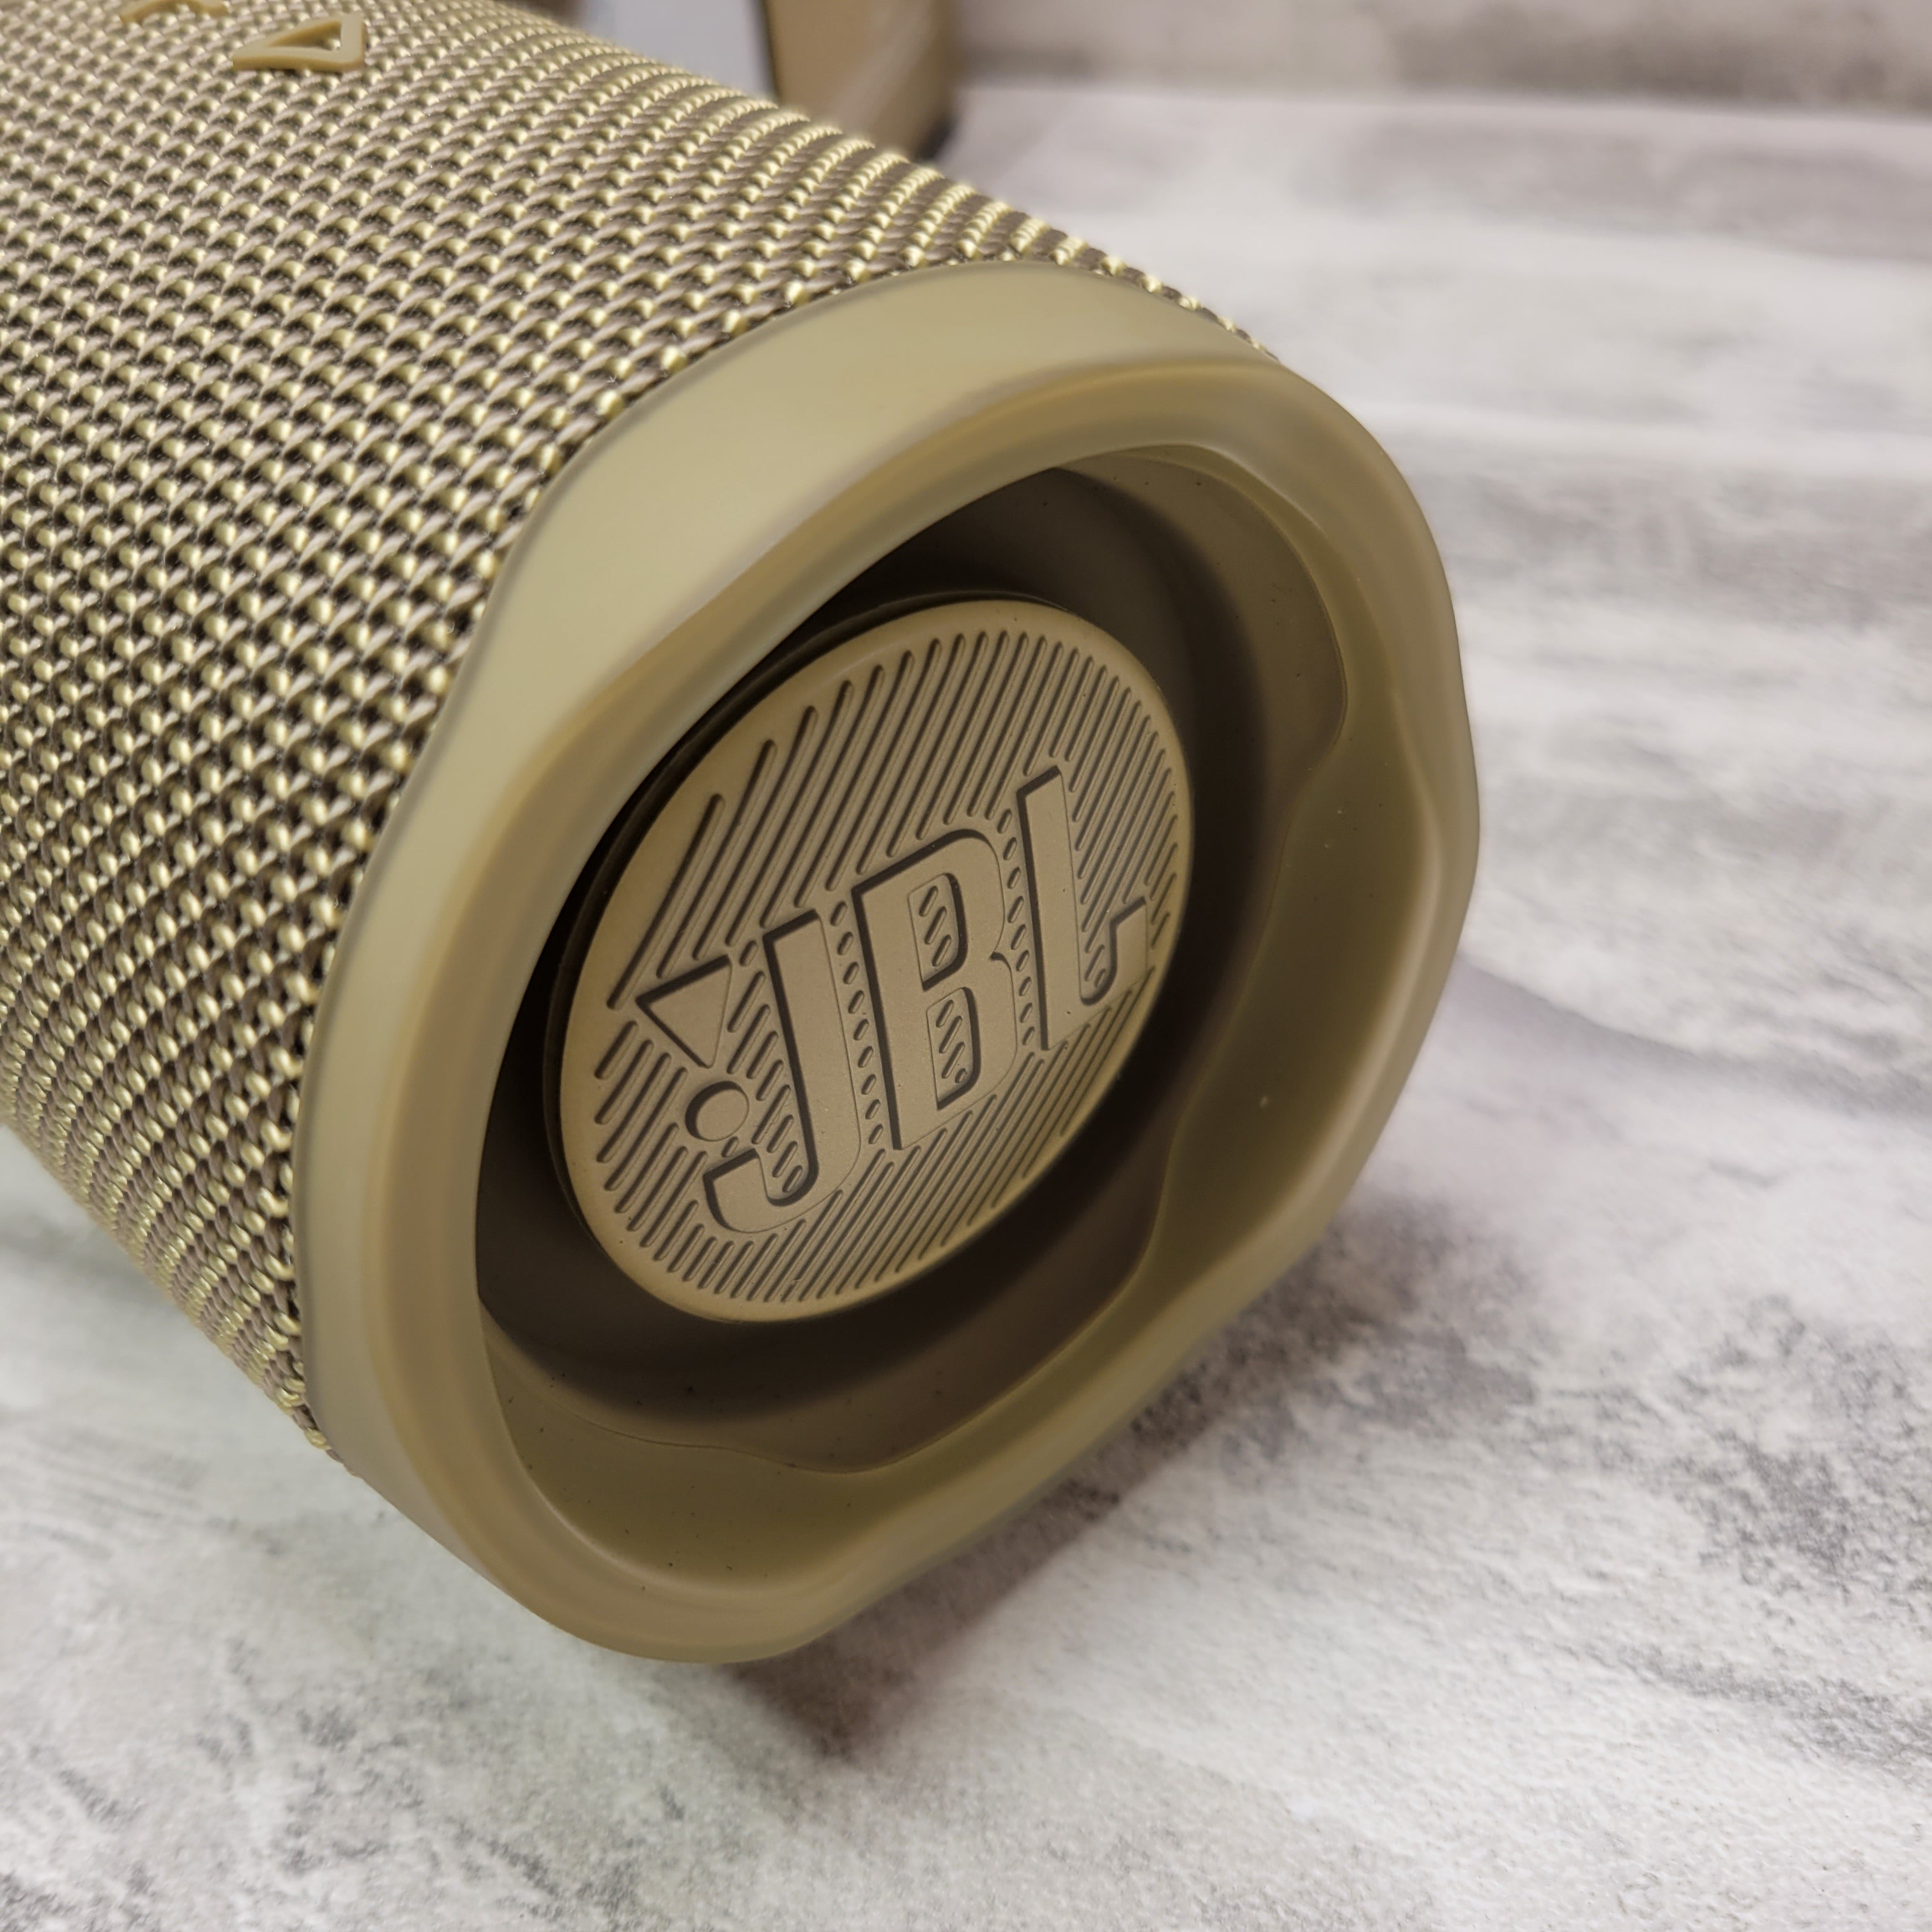 JBL Charge 4 - Waterproof Portable Bluetooth Speaker - Sand (7776171163886)